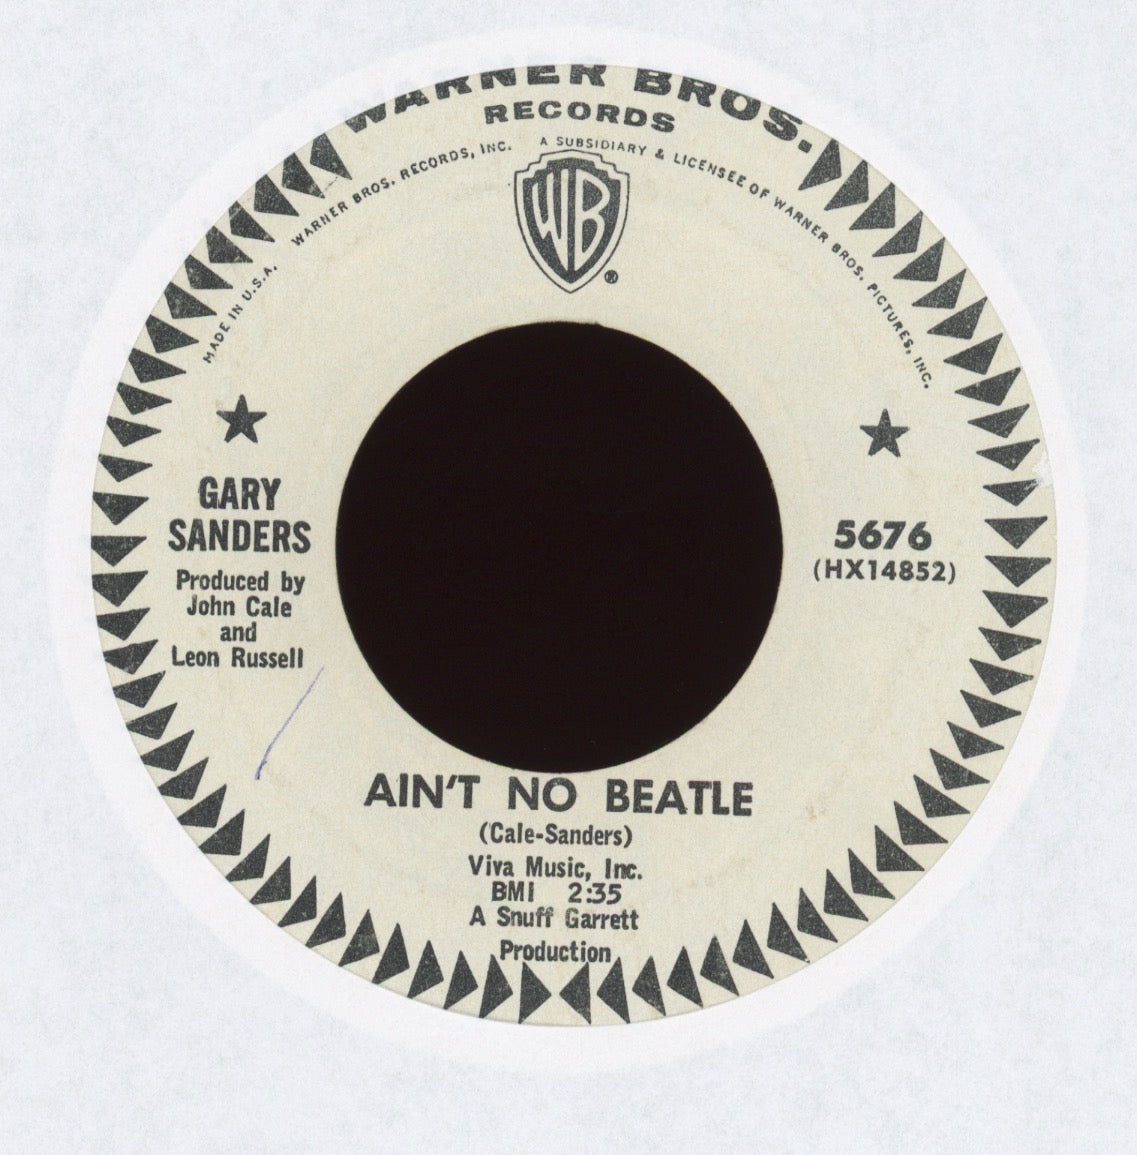 Gary Sanders - Ain't No Beatle on Warner Bros Promo